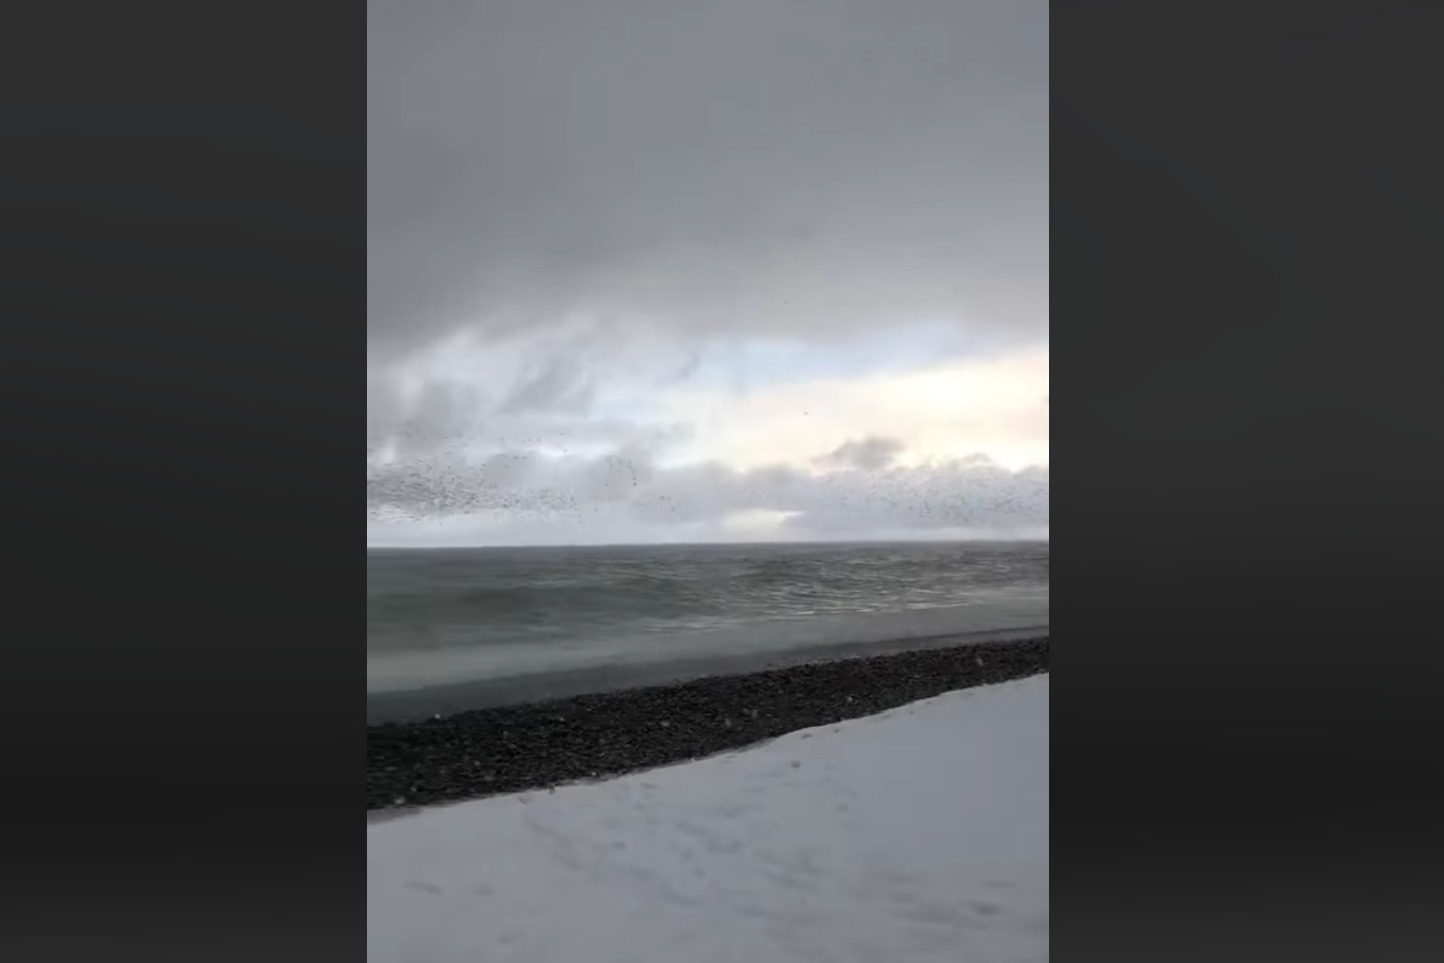 თოვლით დაფარული ზღვის ნაპირი - უჩვეულო ამინდი ბათუმში (ვიდეო)